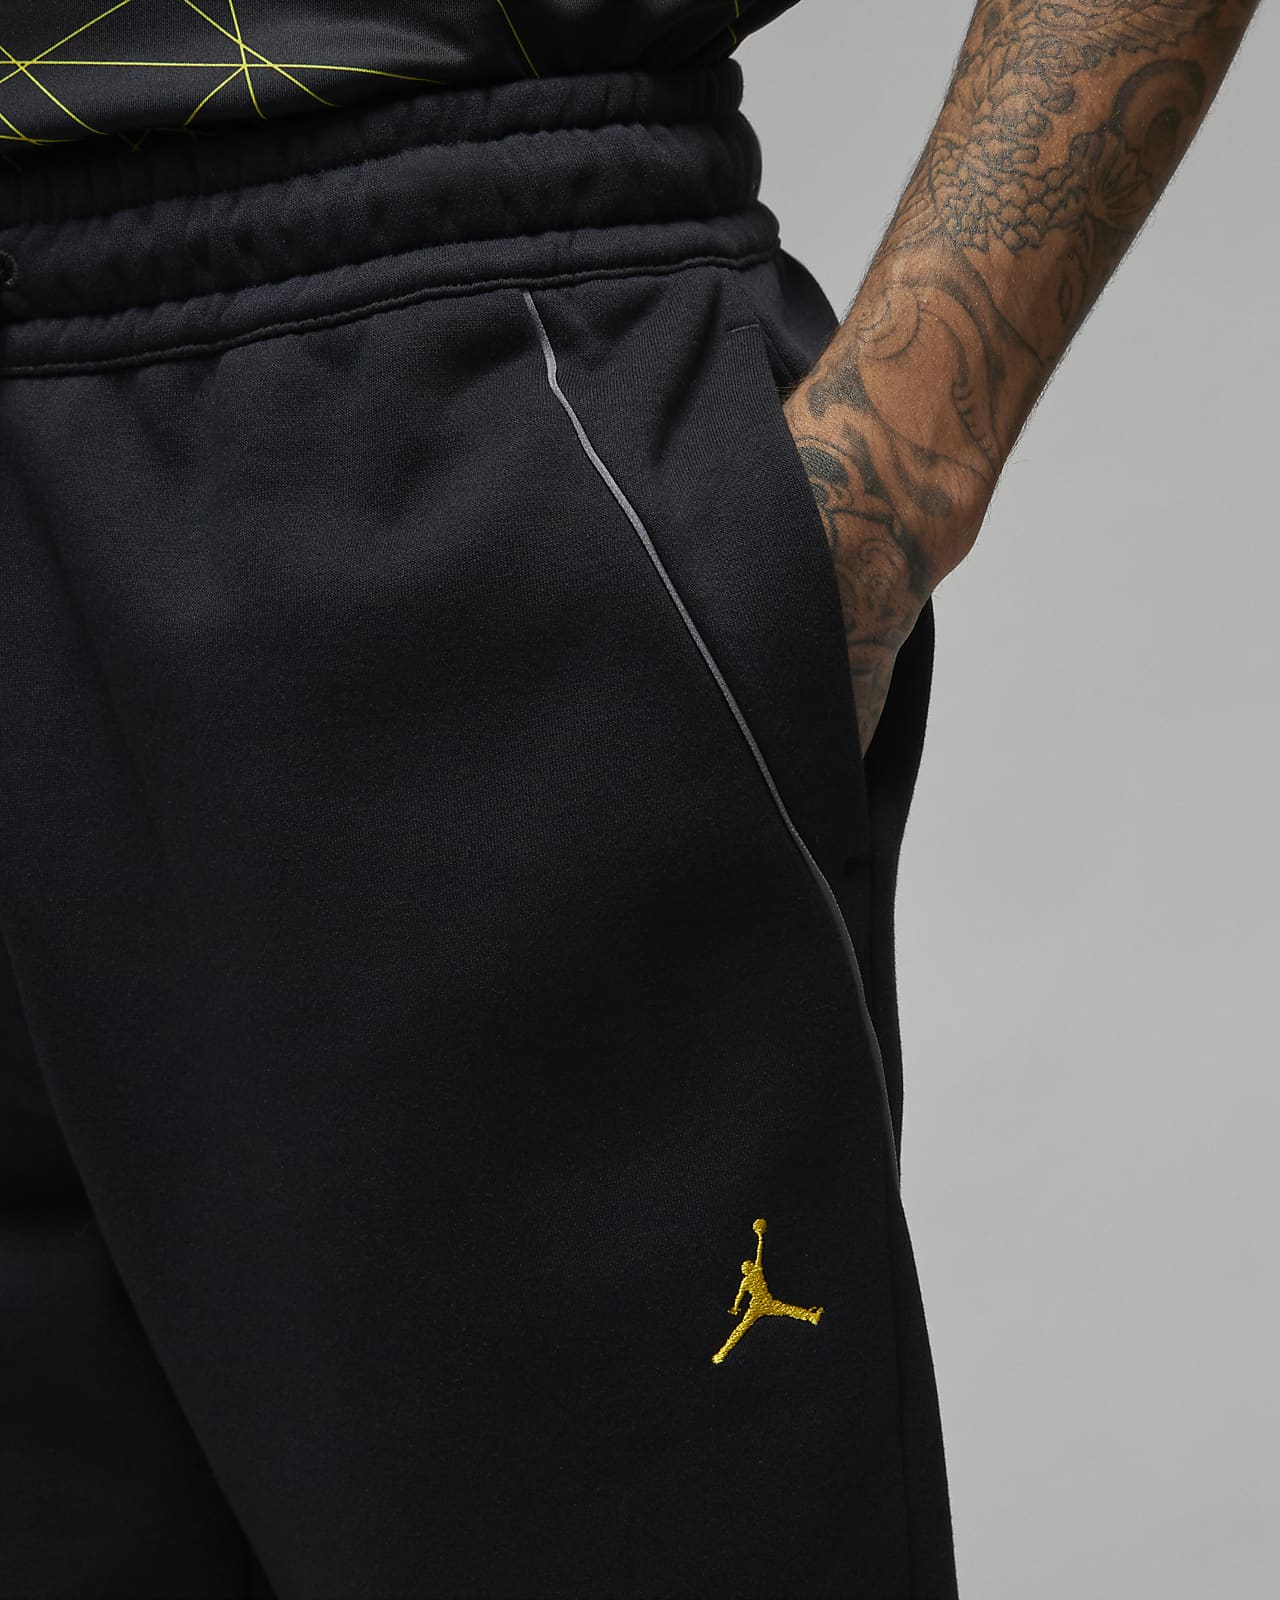 Nike Jordan : -40% sur ce pantalon décontracté pour homme - Le Parisien